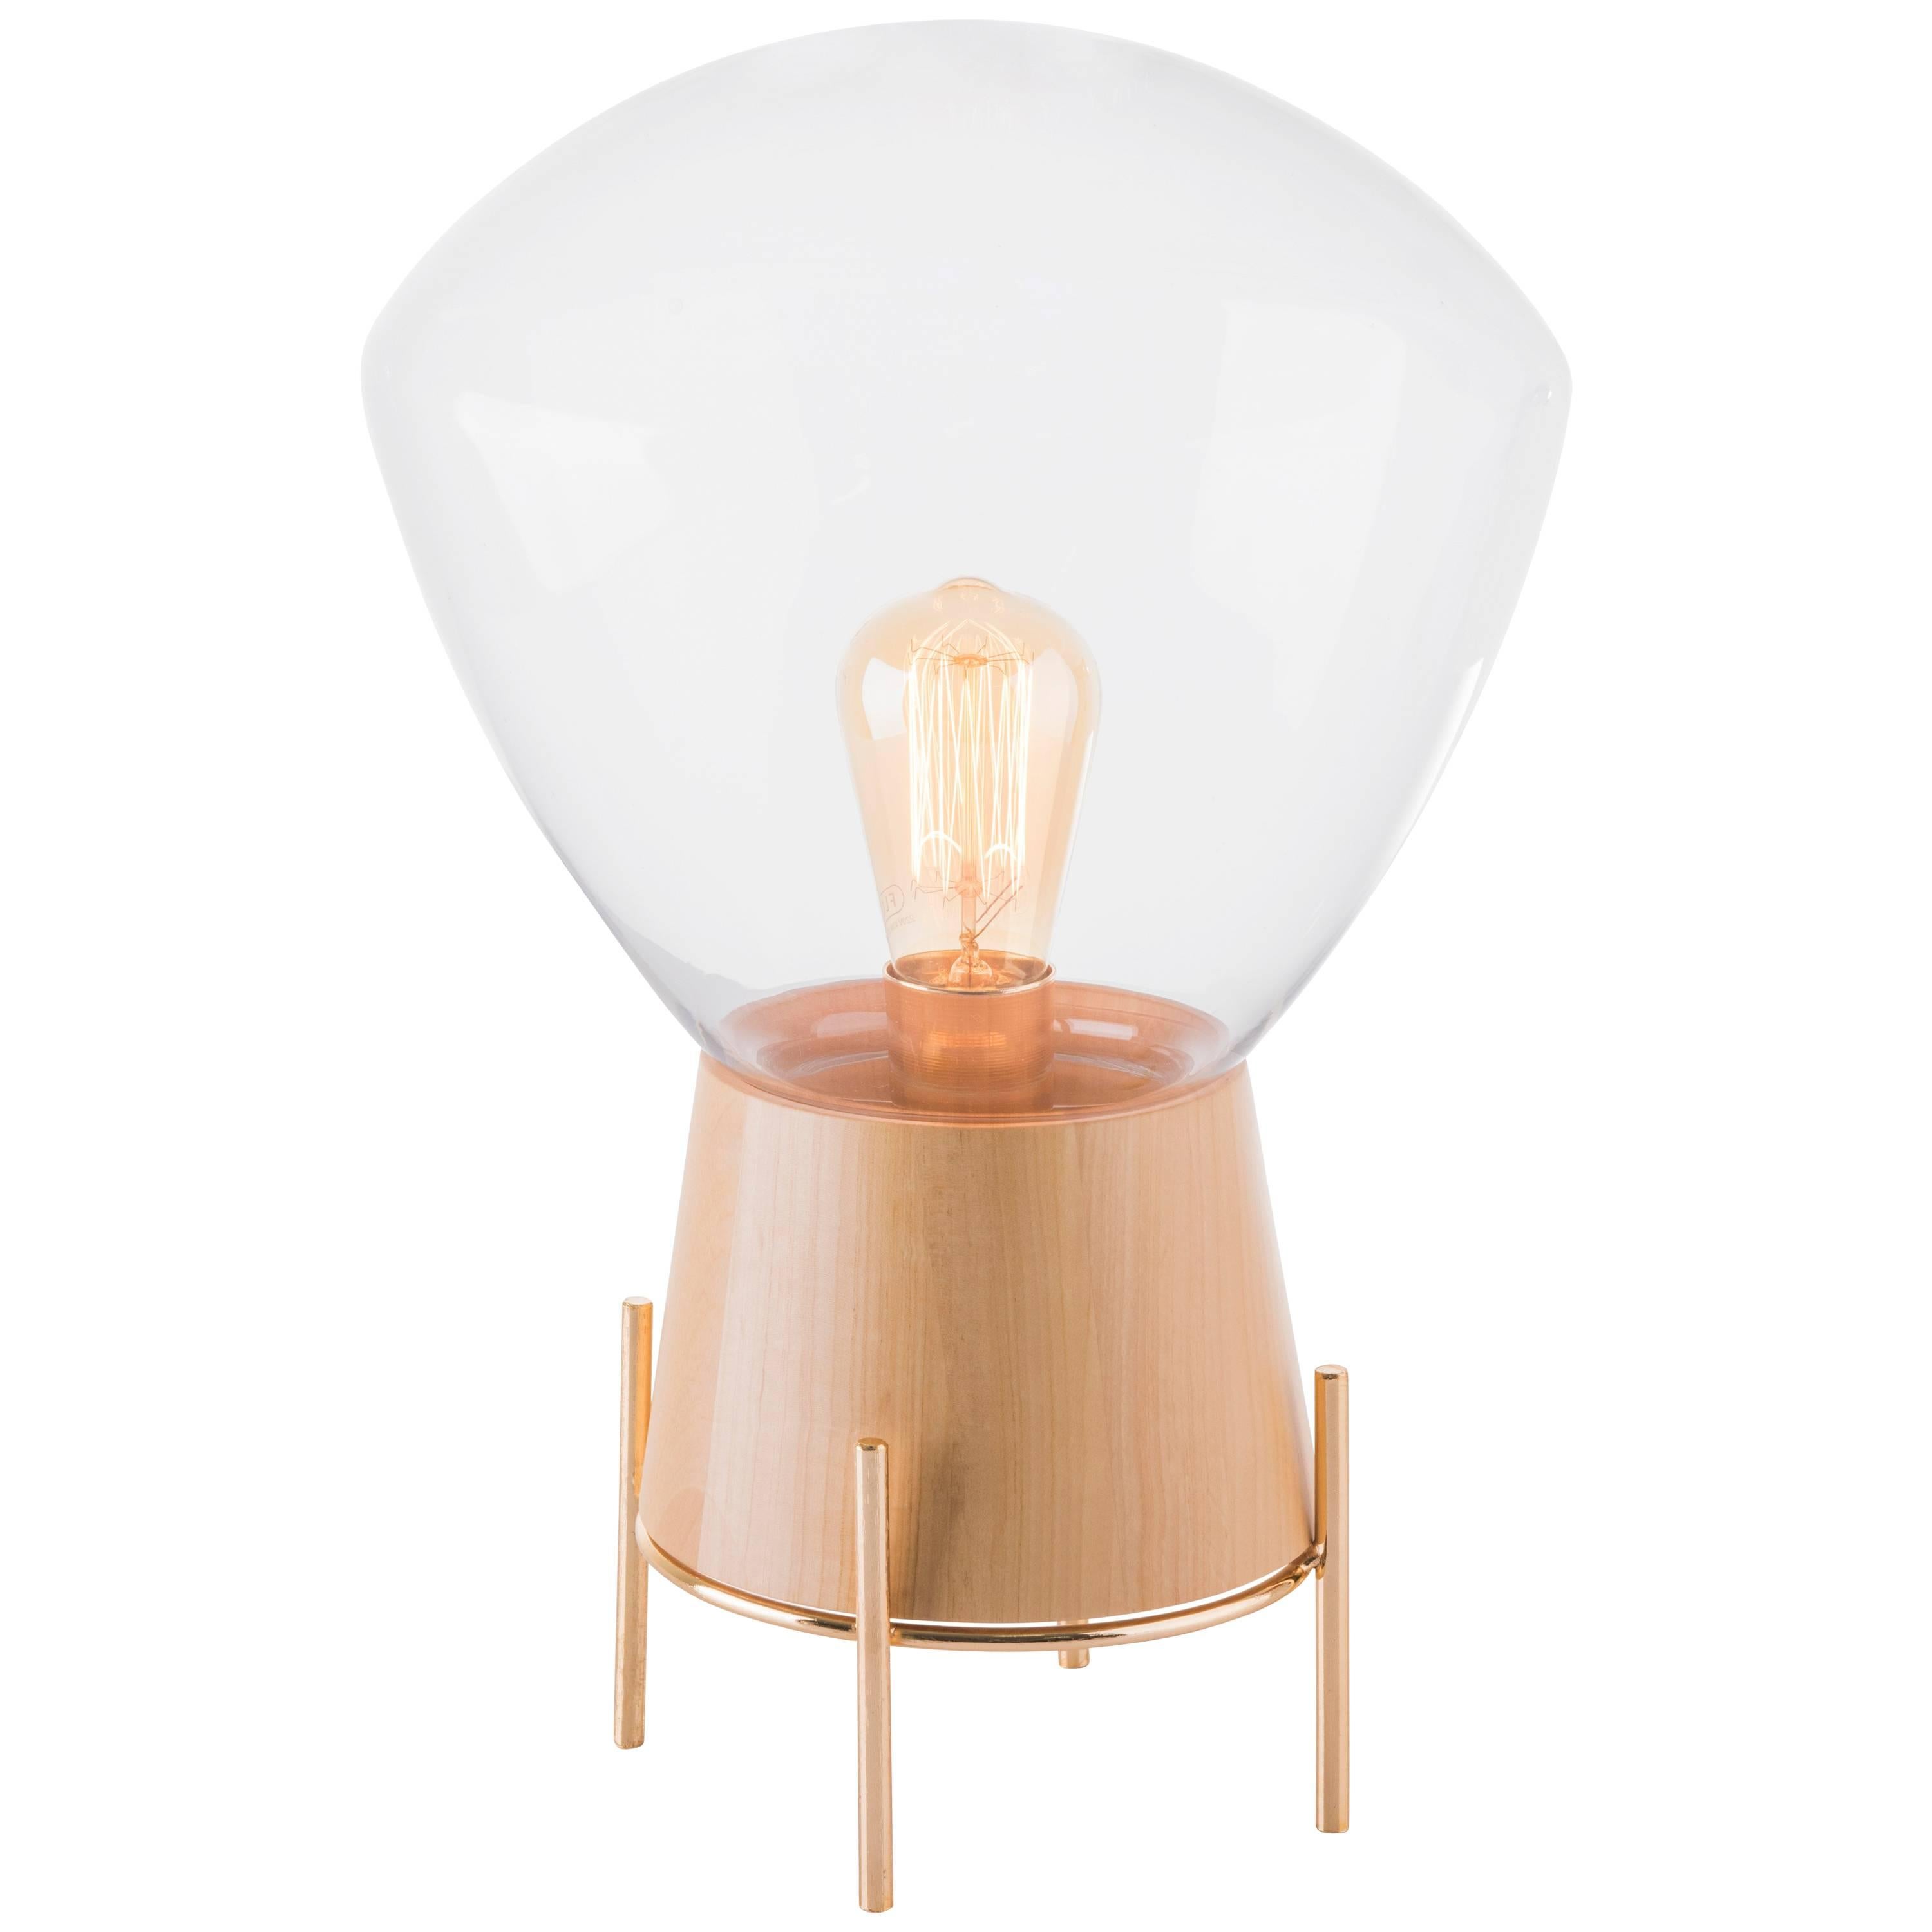 Table Lamp Lampadari #3, Brazilian Wood, Metal and Glass For Sale